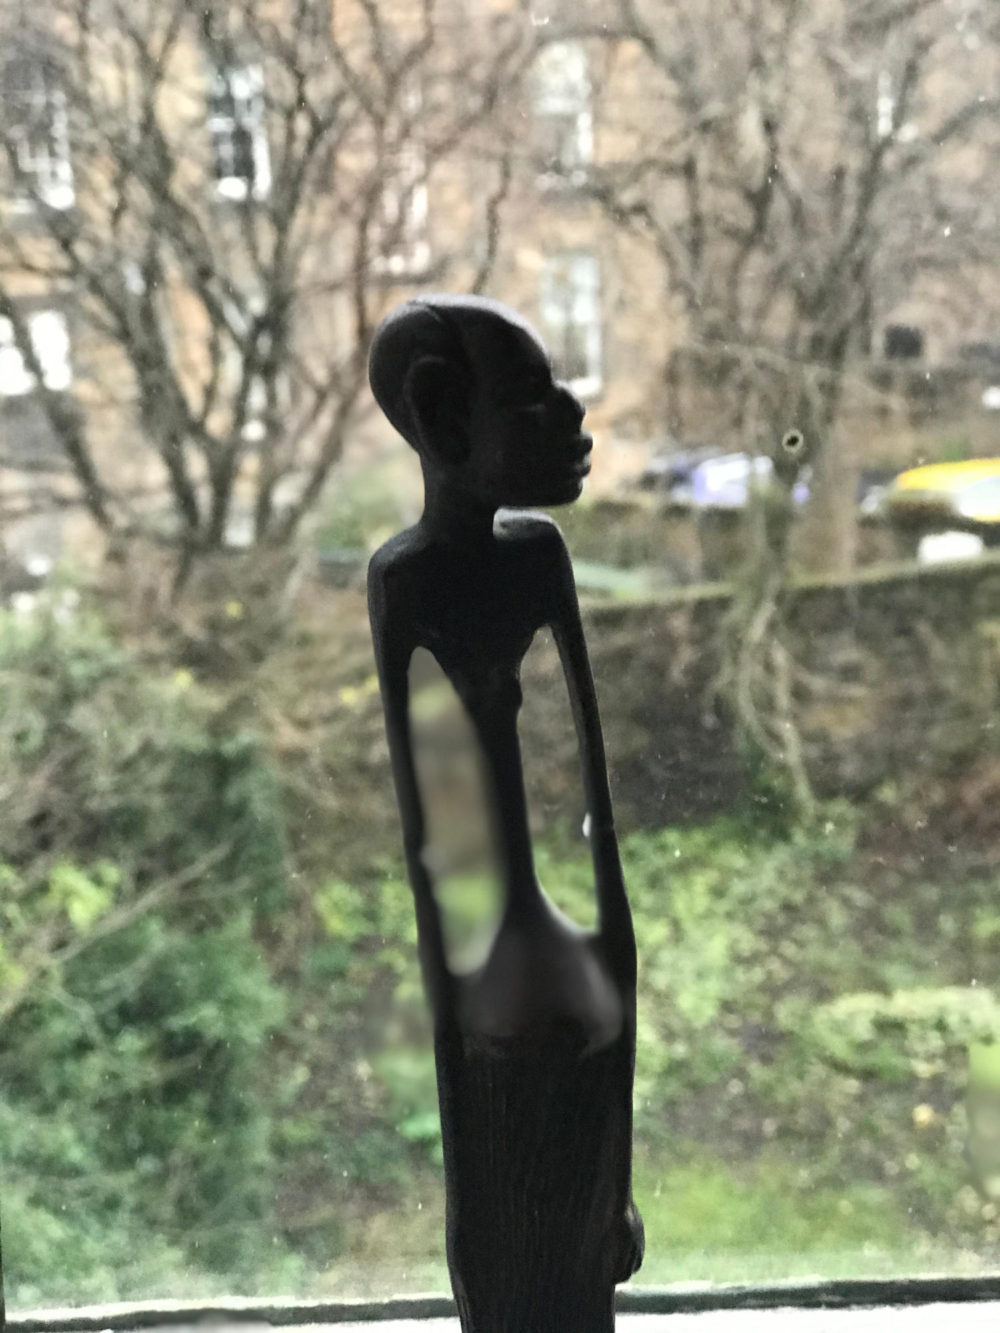 African Bronze Figure